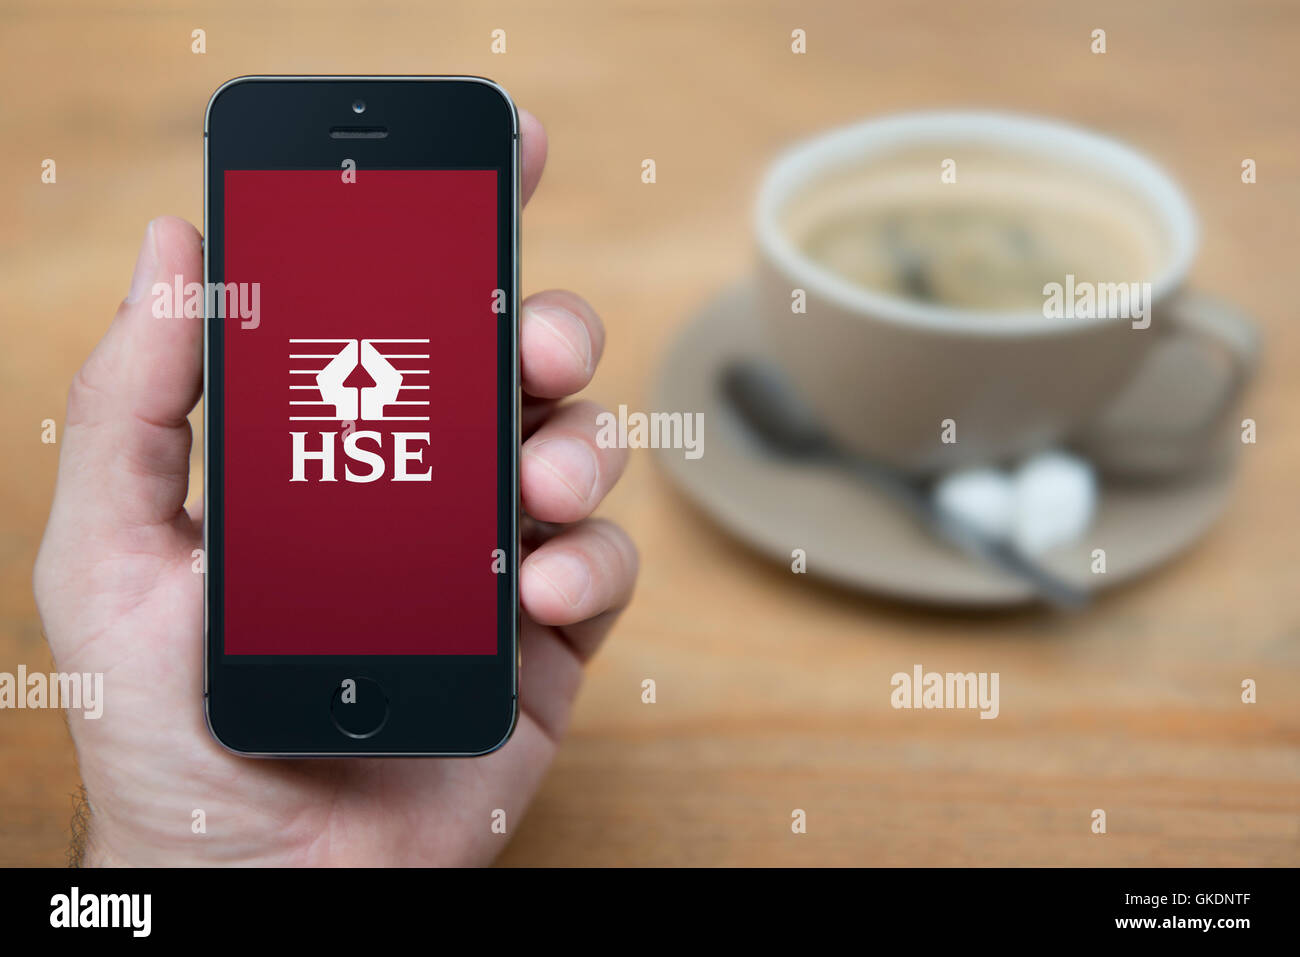 Un uomo guarda al suo iPhone che visualizza il logo HSE, mentre sat con una tazza di caffè (solo uso editoriale). Foto Stock